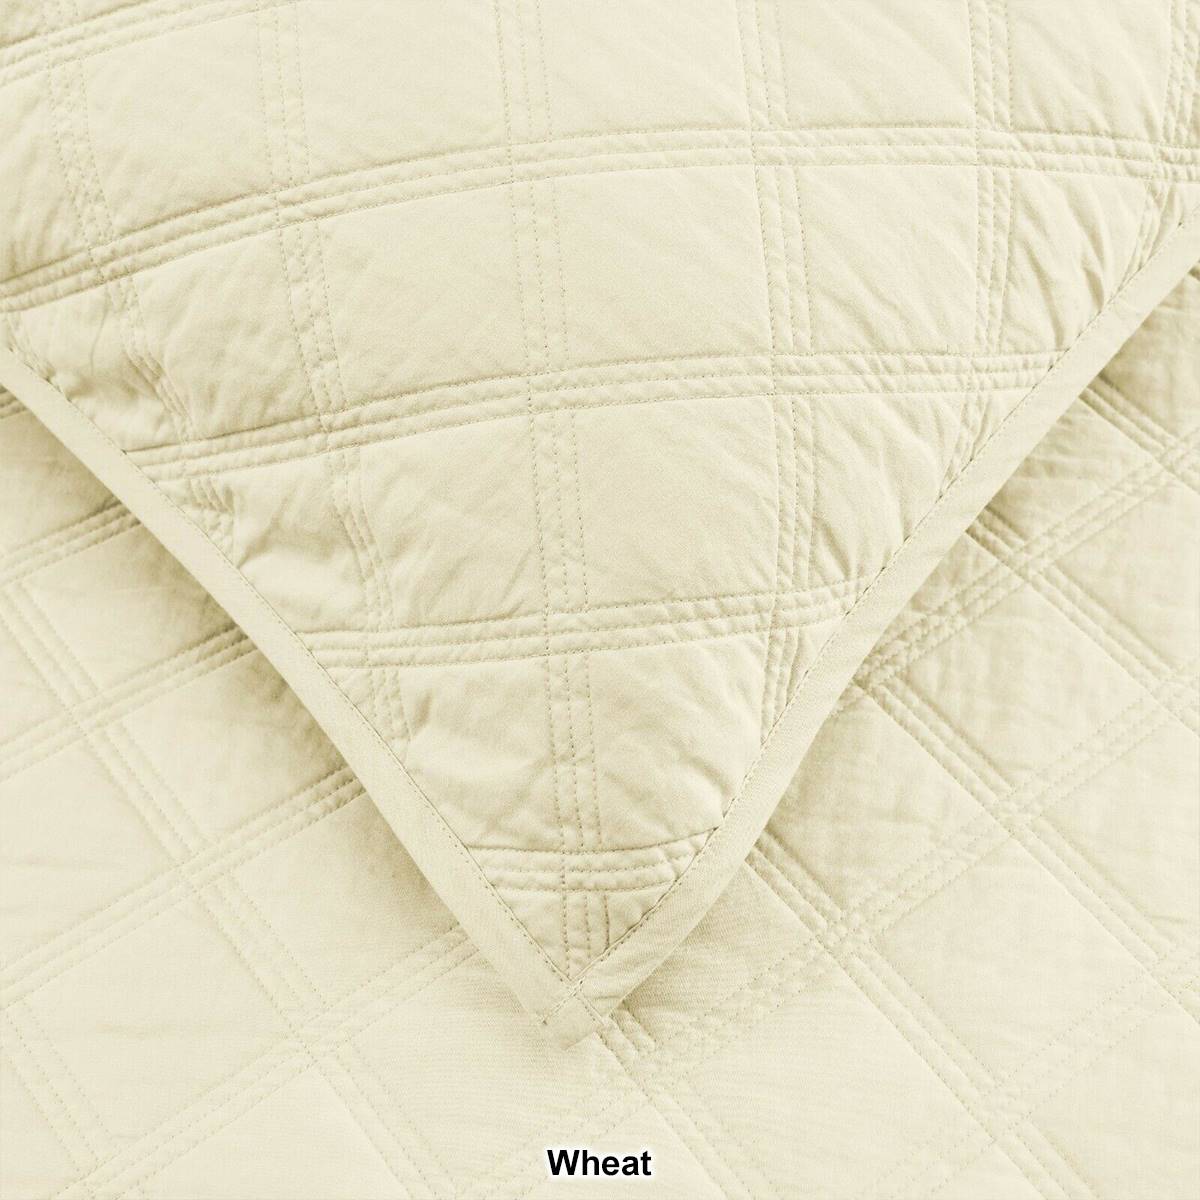 EnvioHome 100% Cotton Solid Quilt Bedding Set